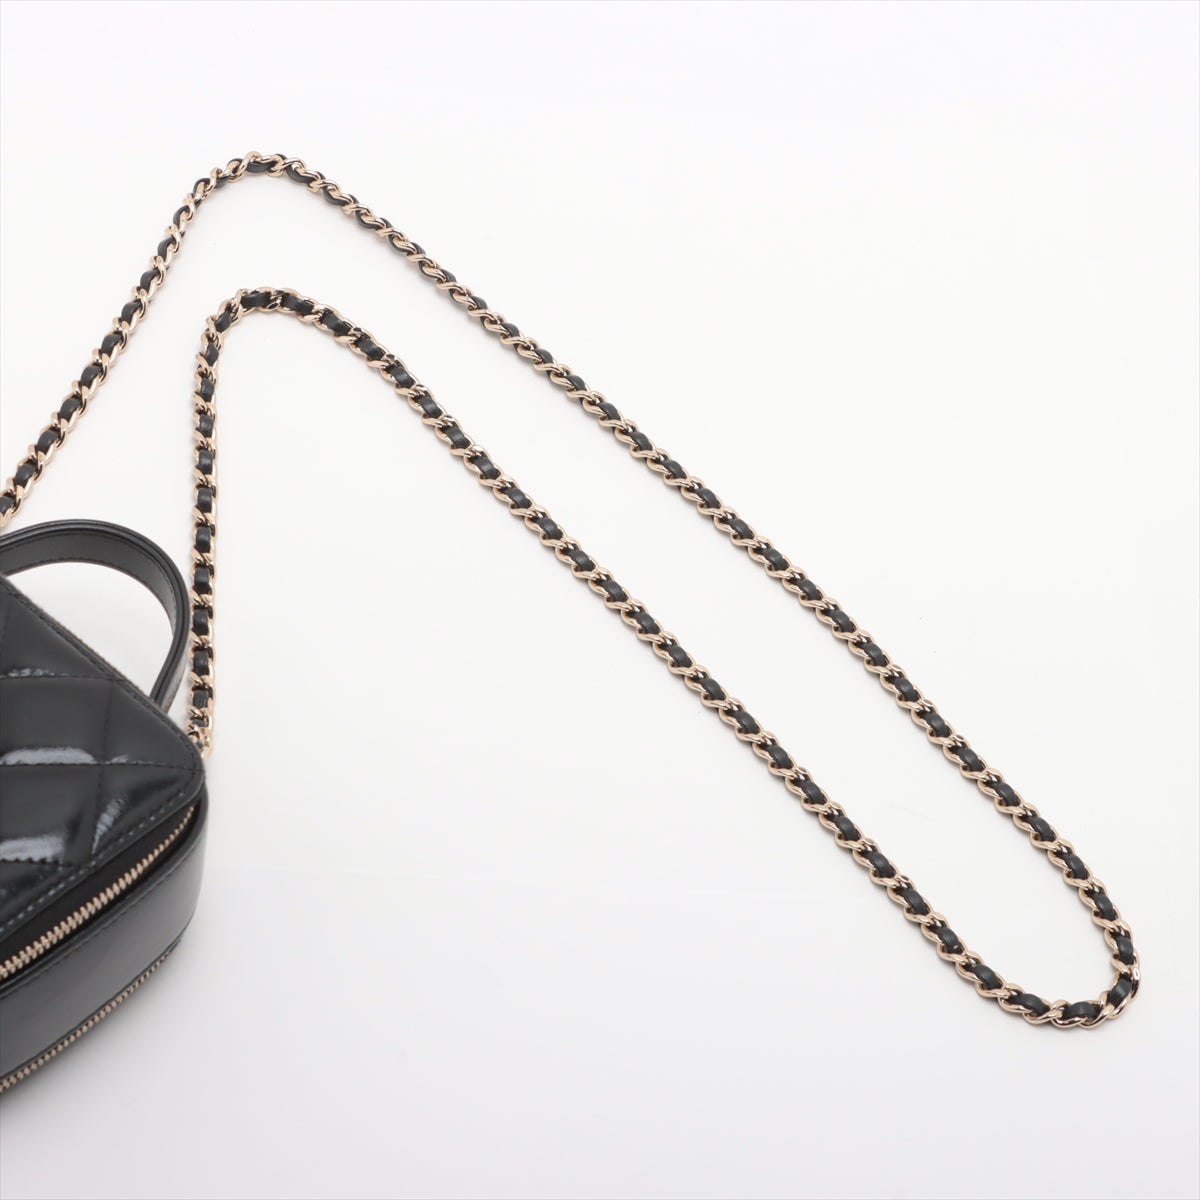 Chanel Matrasse Leather Chain Shoulder Bag Vanity Black G  AP2920 N